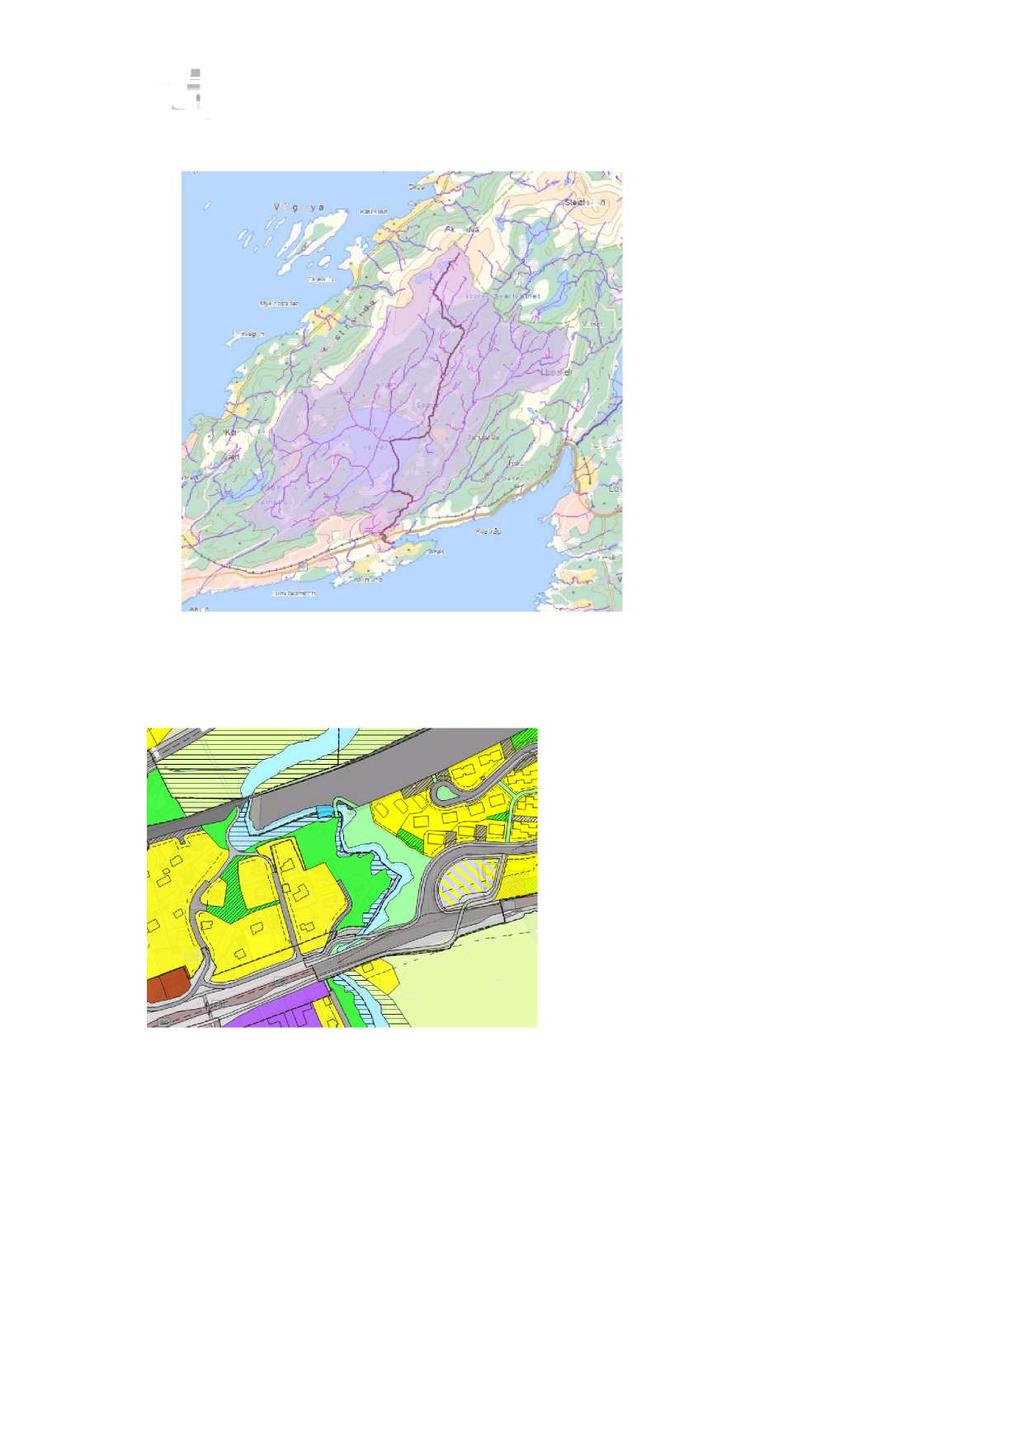 Nedbørsfeltetil Futelvaer på44,7 km 2. Sevedleggbakersti denneplanenfor flere detaljerom nedbørsfeltet. 2.2. Forholdet til offentlige planer Kartutsnitteter hentetfra Bodøkommuneshjemmesideog viserreguleringsplanenfor området.